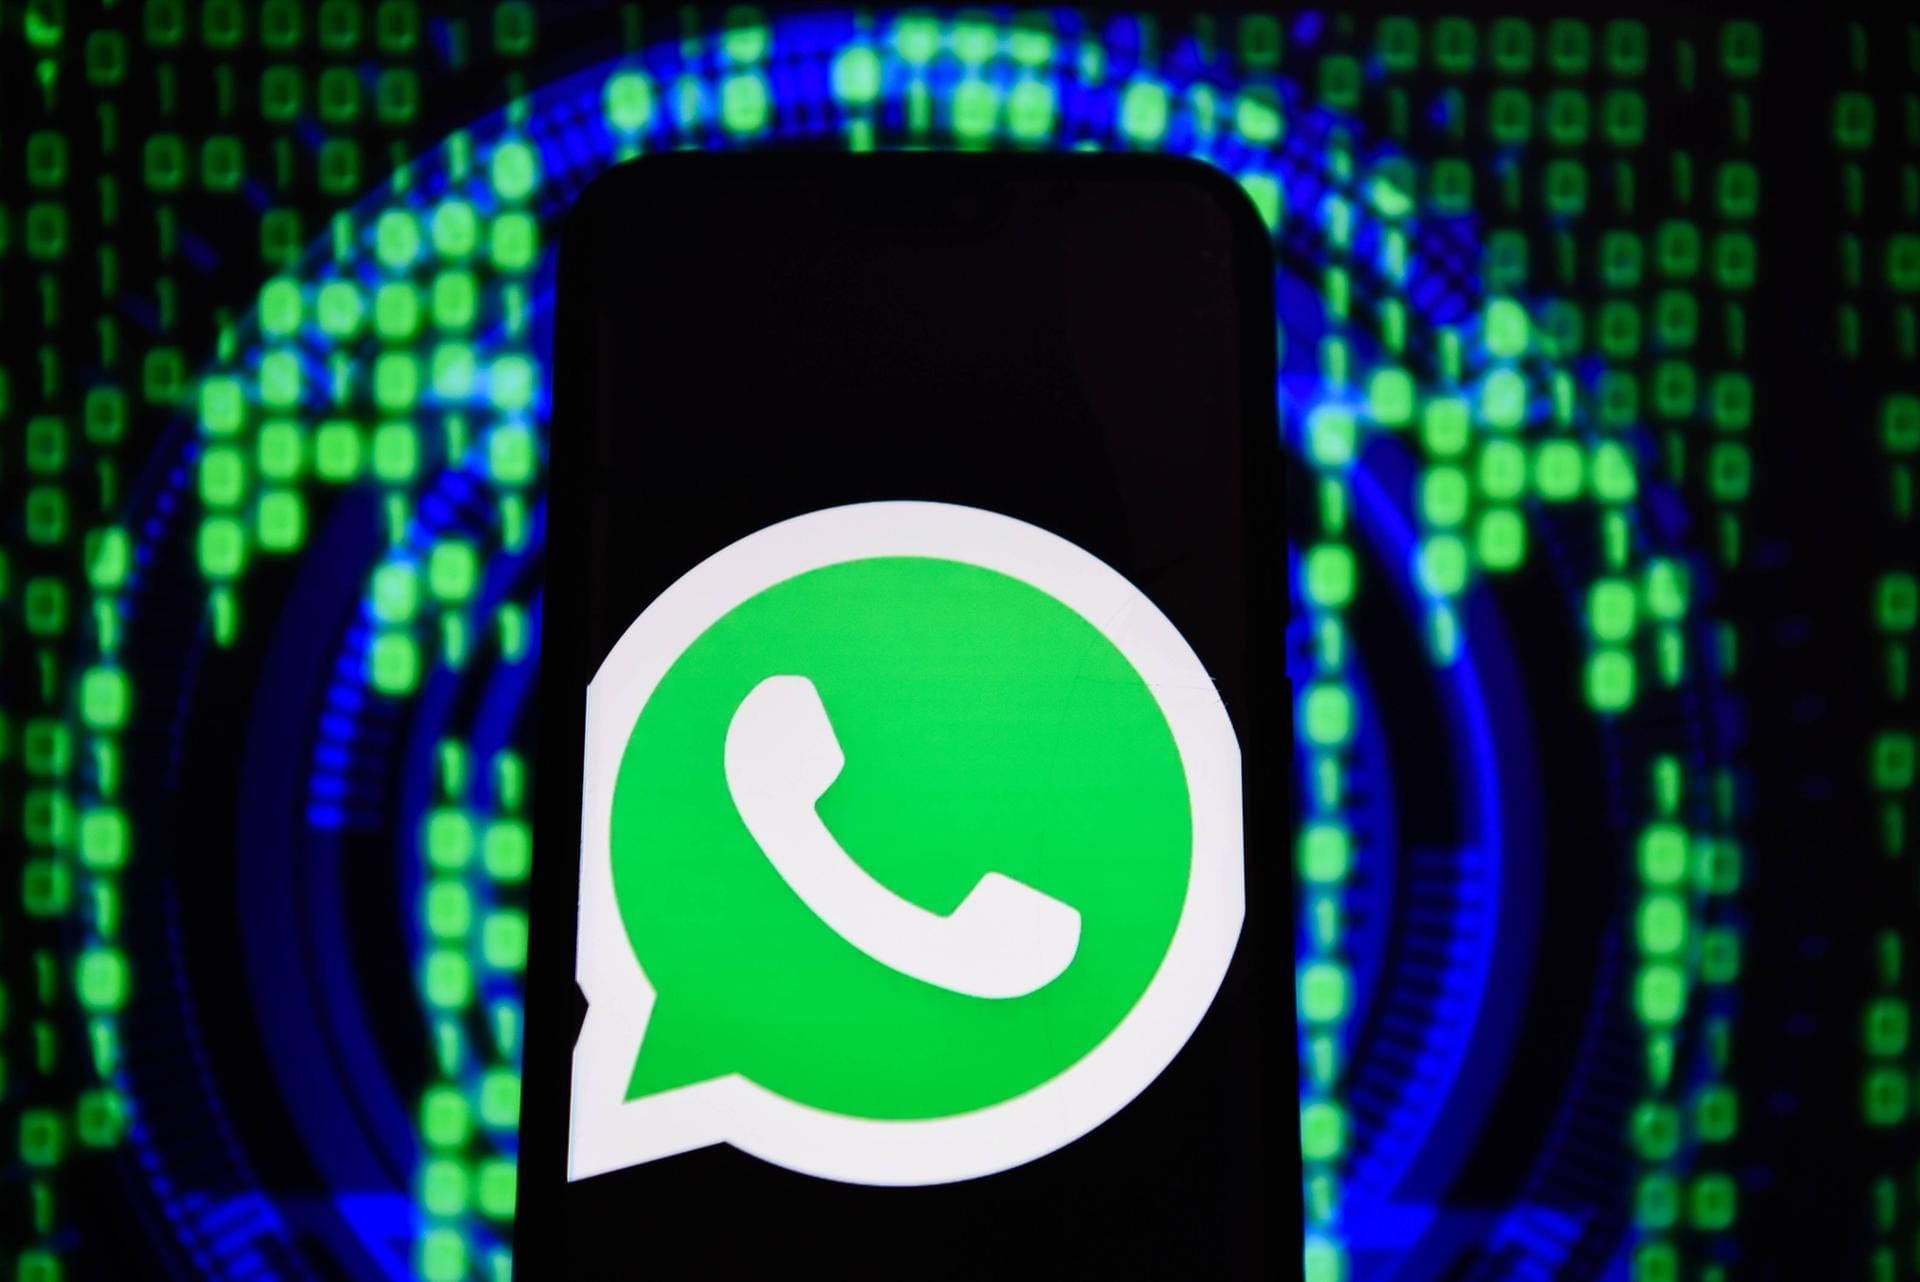 Wie "Mimimakama.at" berichtet, sind derzeit Nachrichten von Betrügern im Namen von WhatsApp in Umlauf. In den Mails werden Nutzer gewarnt, dass Nutzer ihr Konto innerhalb von 48 Stunden aktualisieren müssen – ansonsten wird es gesperrt.